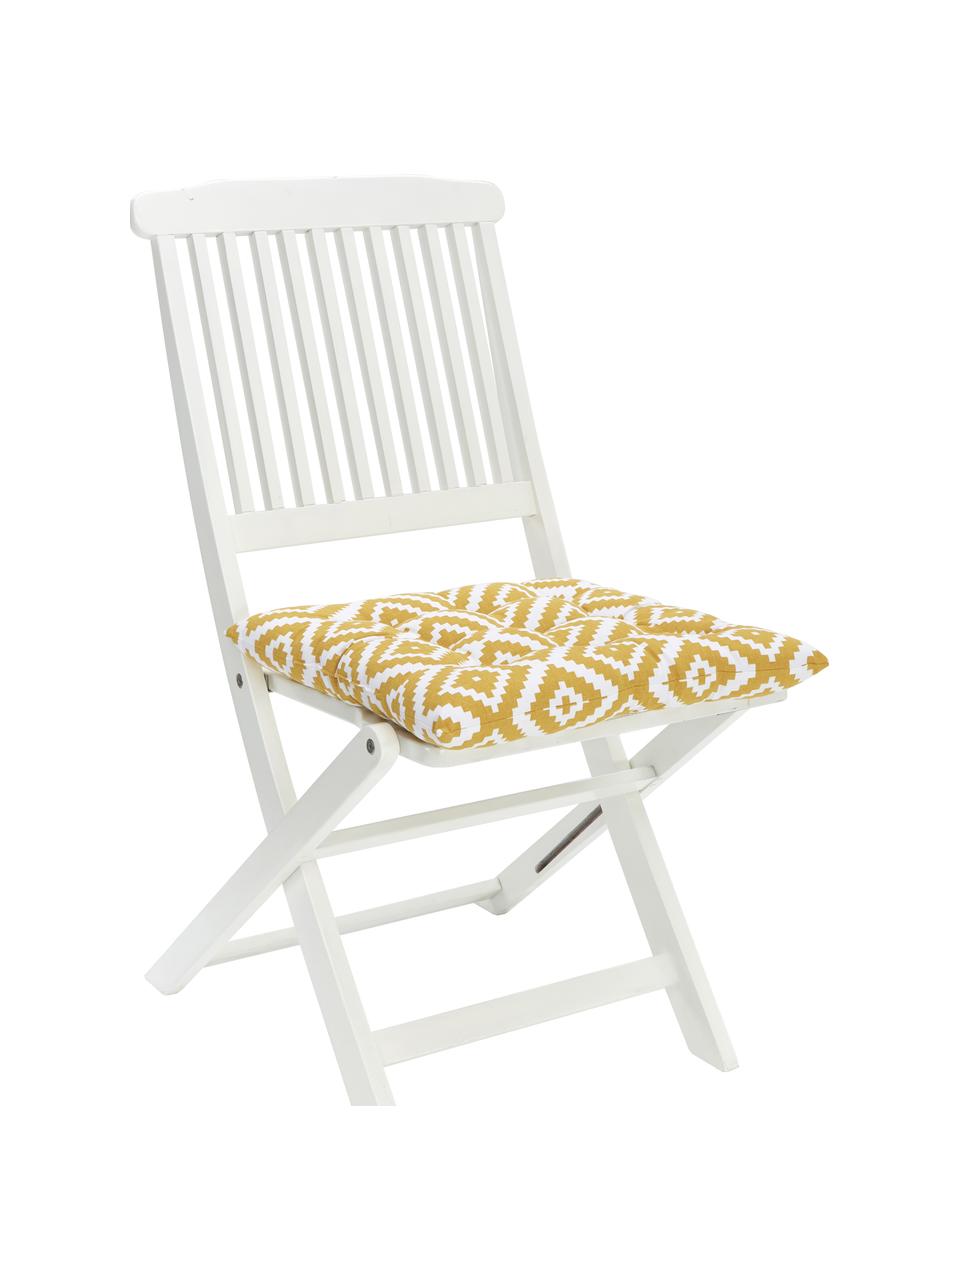 Poduszka na krzesło Miami, Żółty, biały, S 40 x D 40 cm